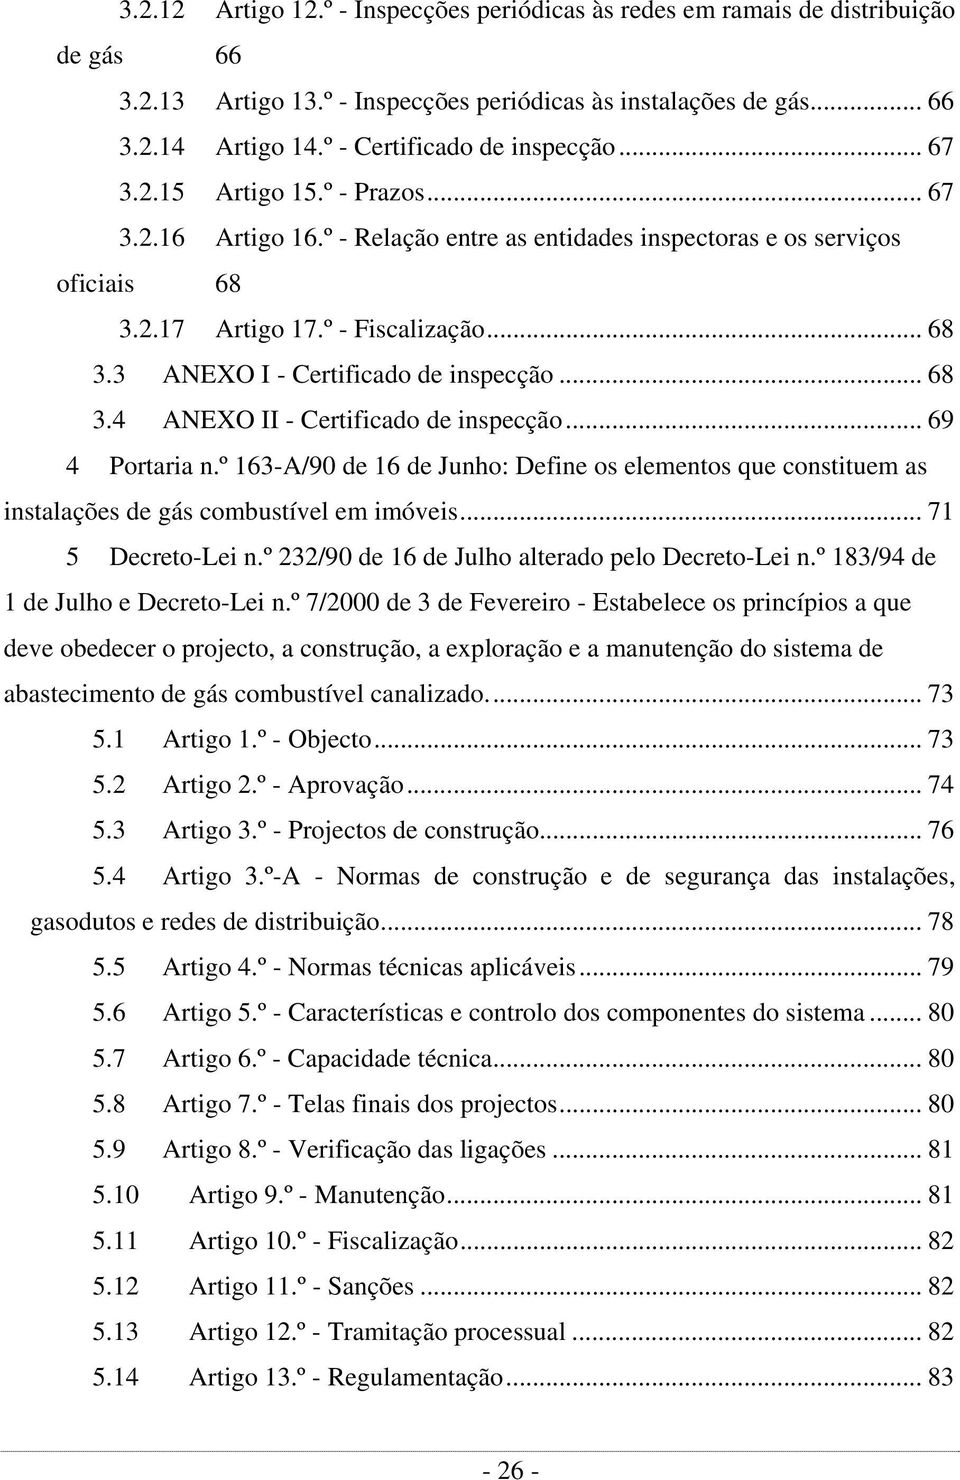 .. 68 3.4 ANEXO II - Certificado de inspecção... 69 4 Portaria n.º 163-A/90 de 16 de Junho: Define os elementos que constituem as instalações de gás combustível em imóveis... 71 5 Decreto-Lei n.